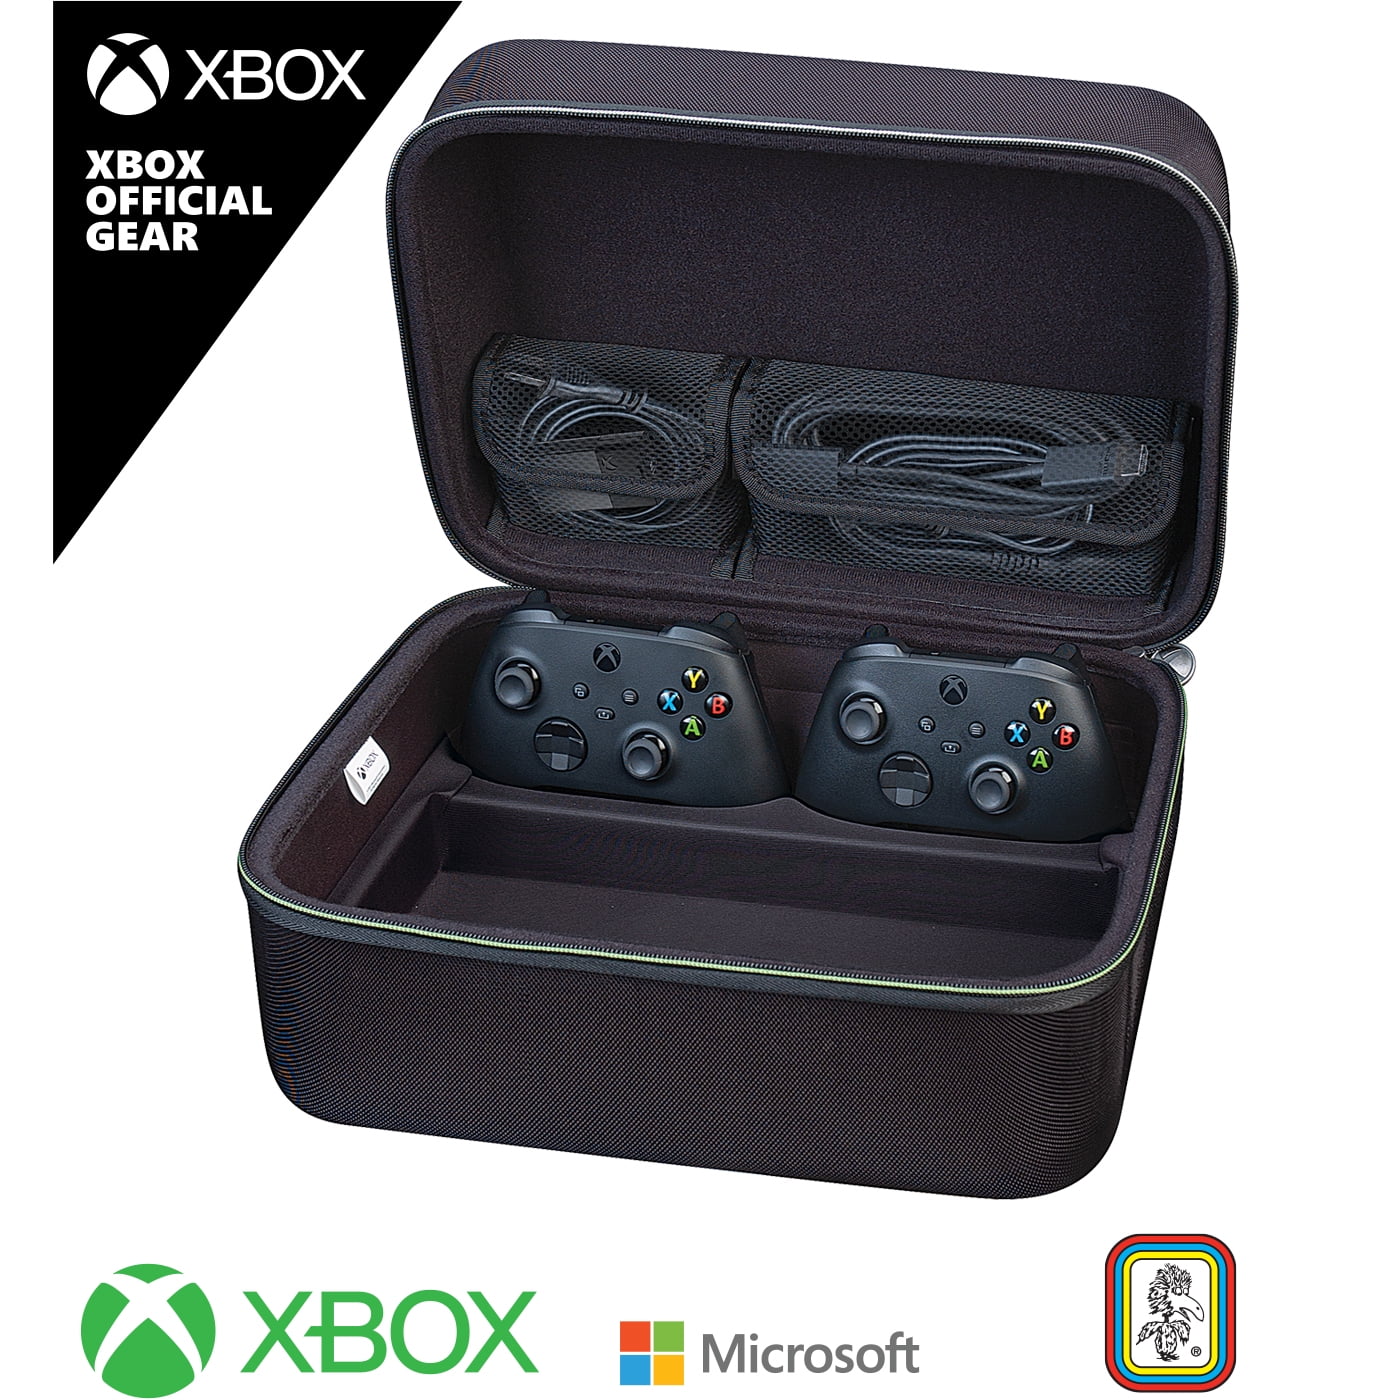 Pack d'accessoire Raiden Stream pack por pour console PS5 / Xbox Serie X/S  / PS4 / Xbox One / Nintendo sWitch et PC - Pack pour rs avec boitier  de capture vidéo